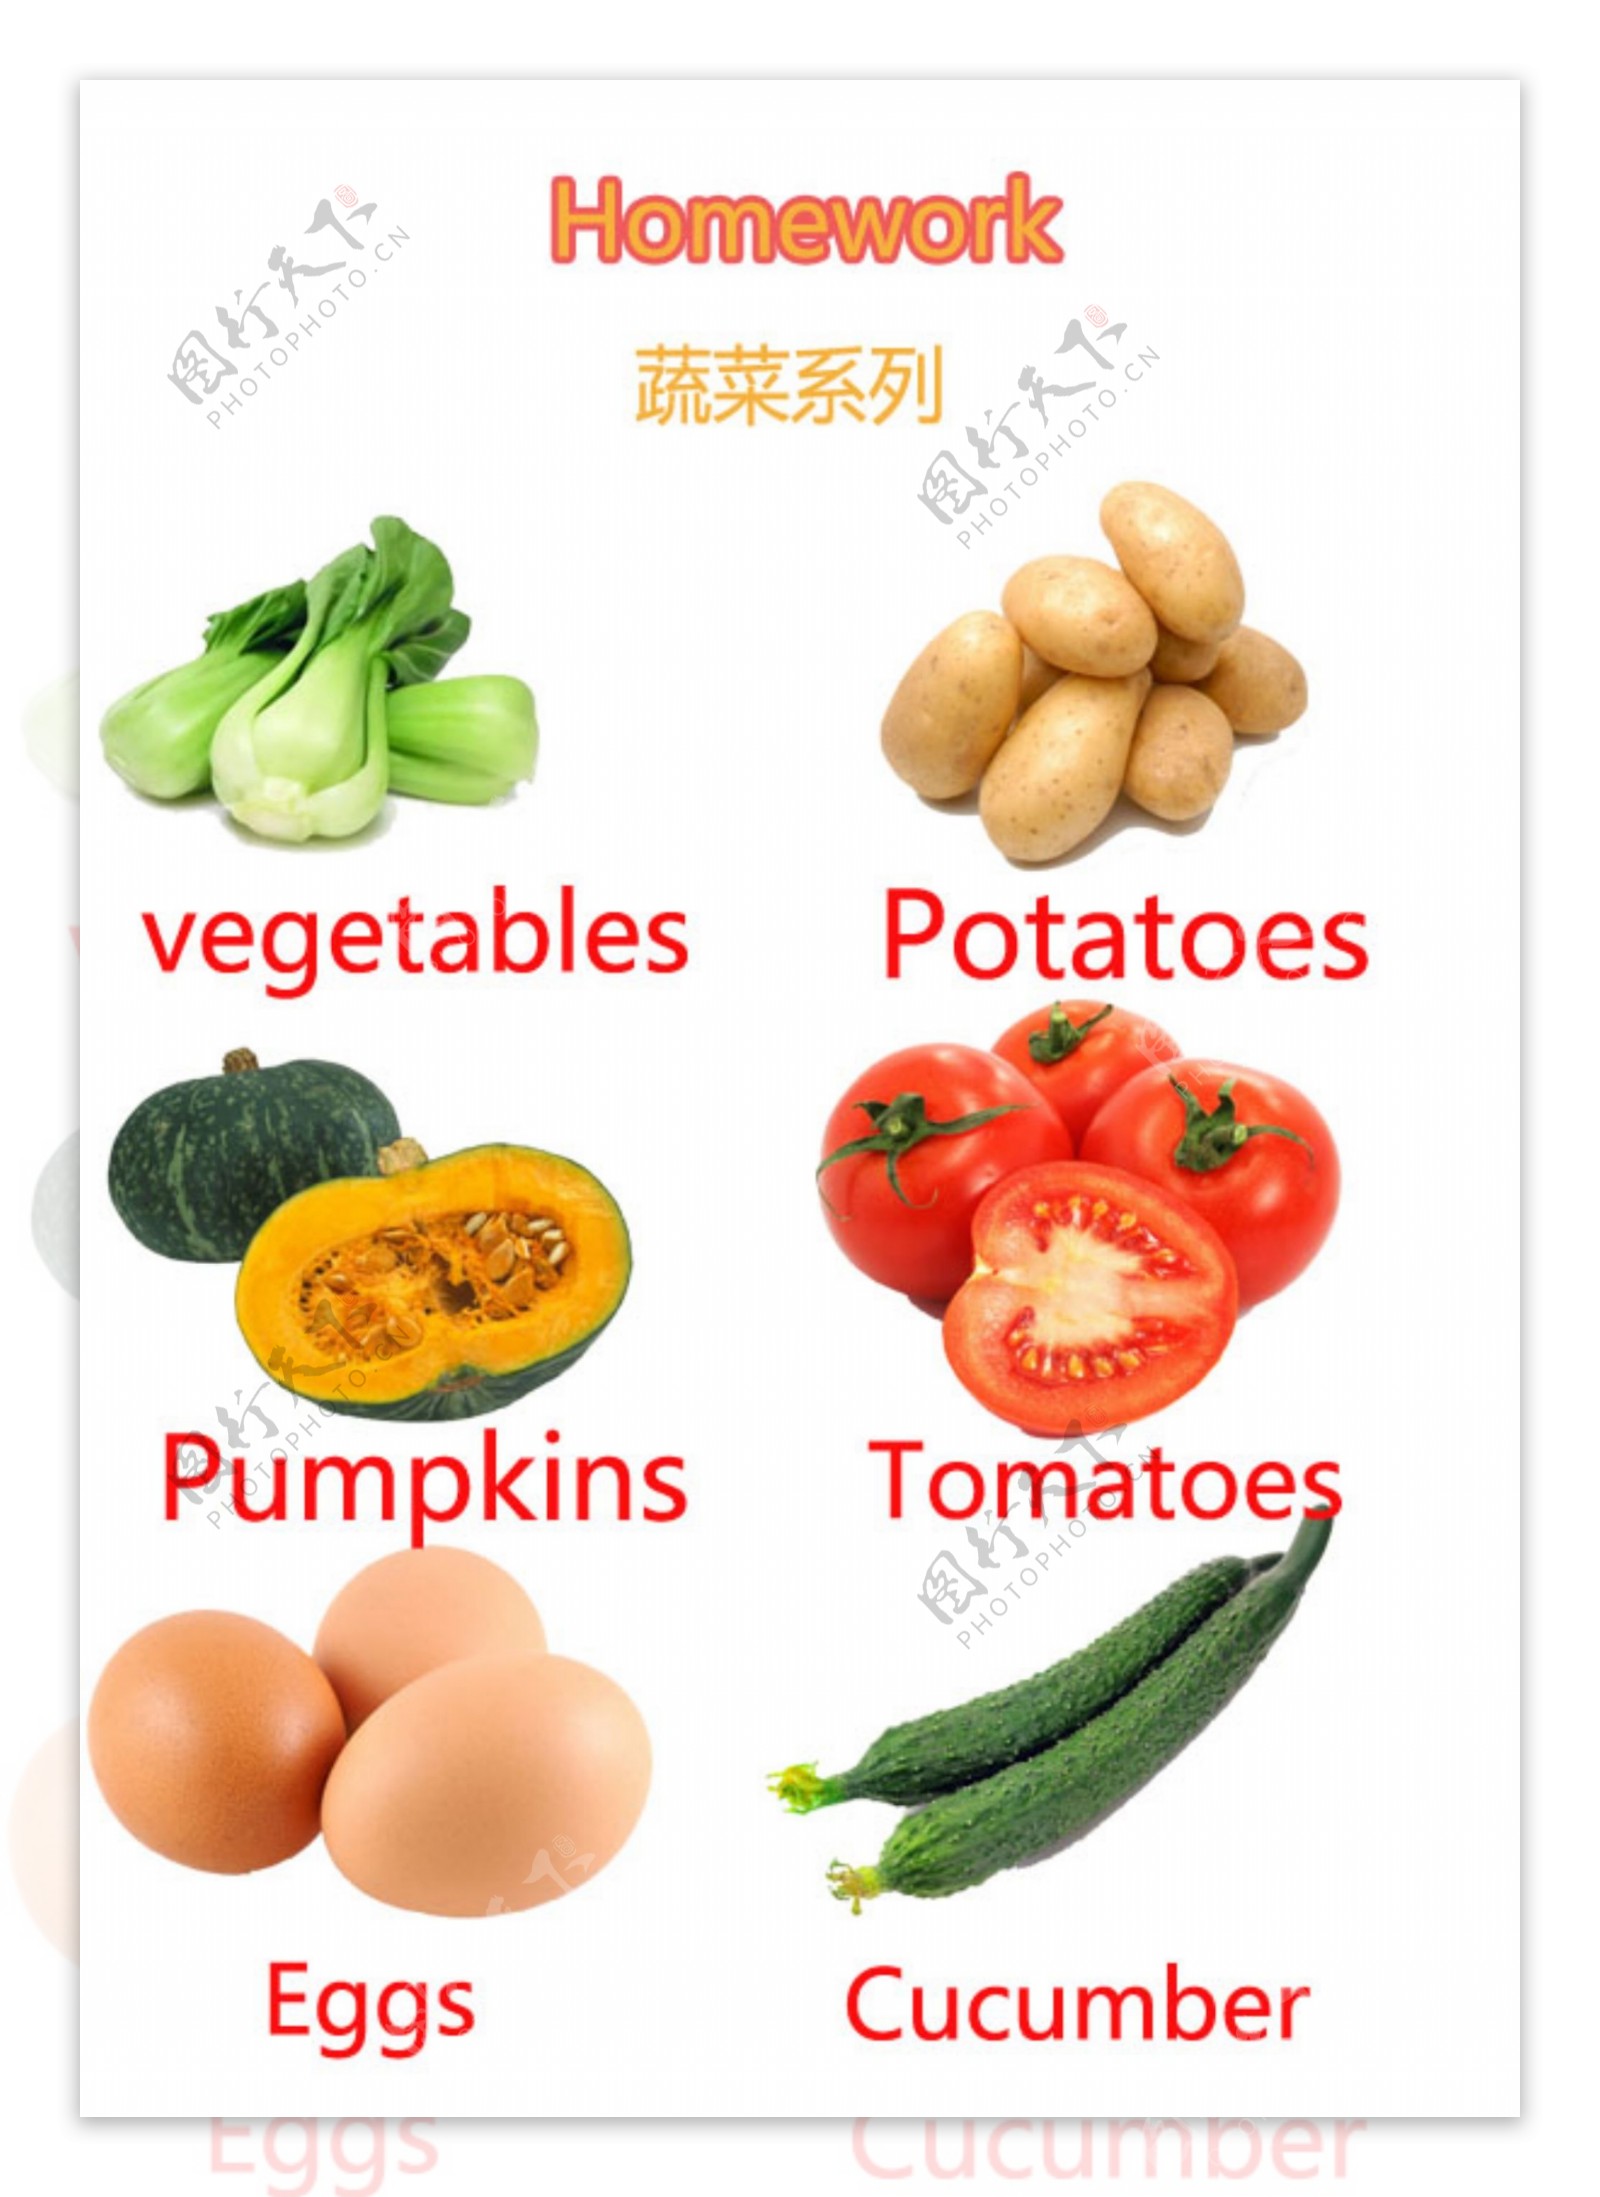 蔬菜英语图片